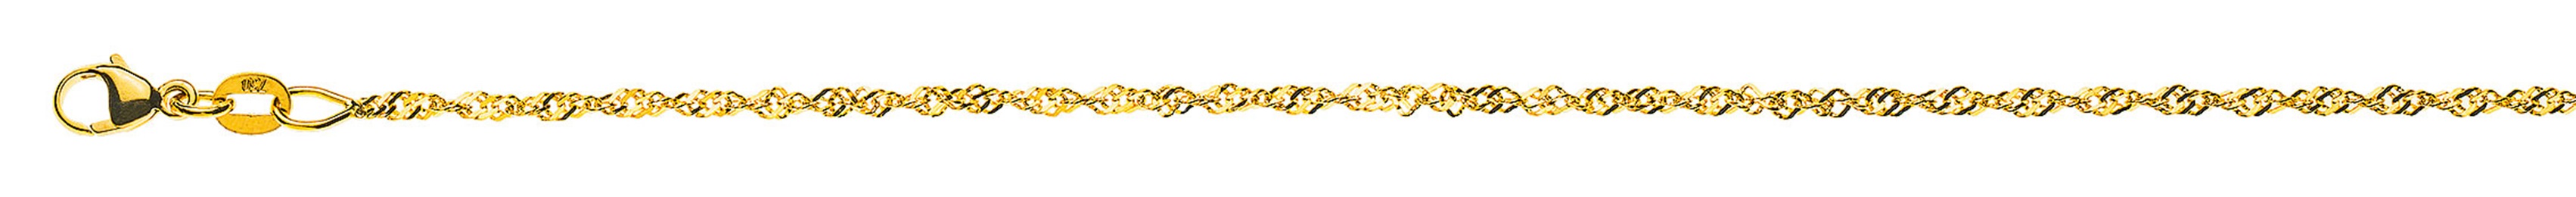 AURONOS Prestige Necklace Yellow Gold 18K Singapore Chain 60cm 1.5mm